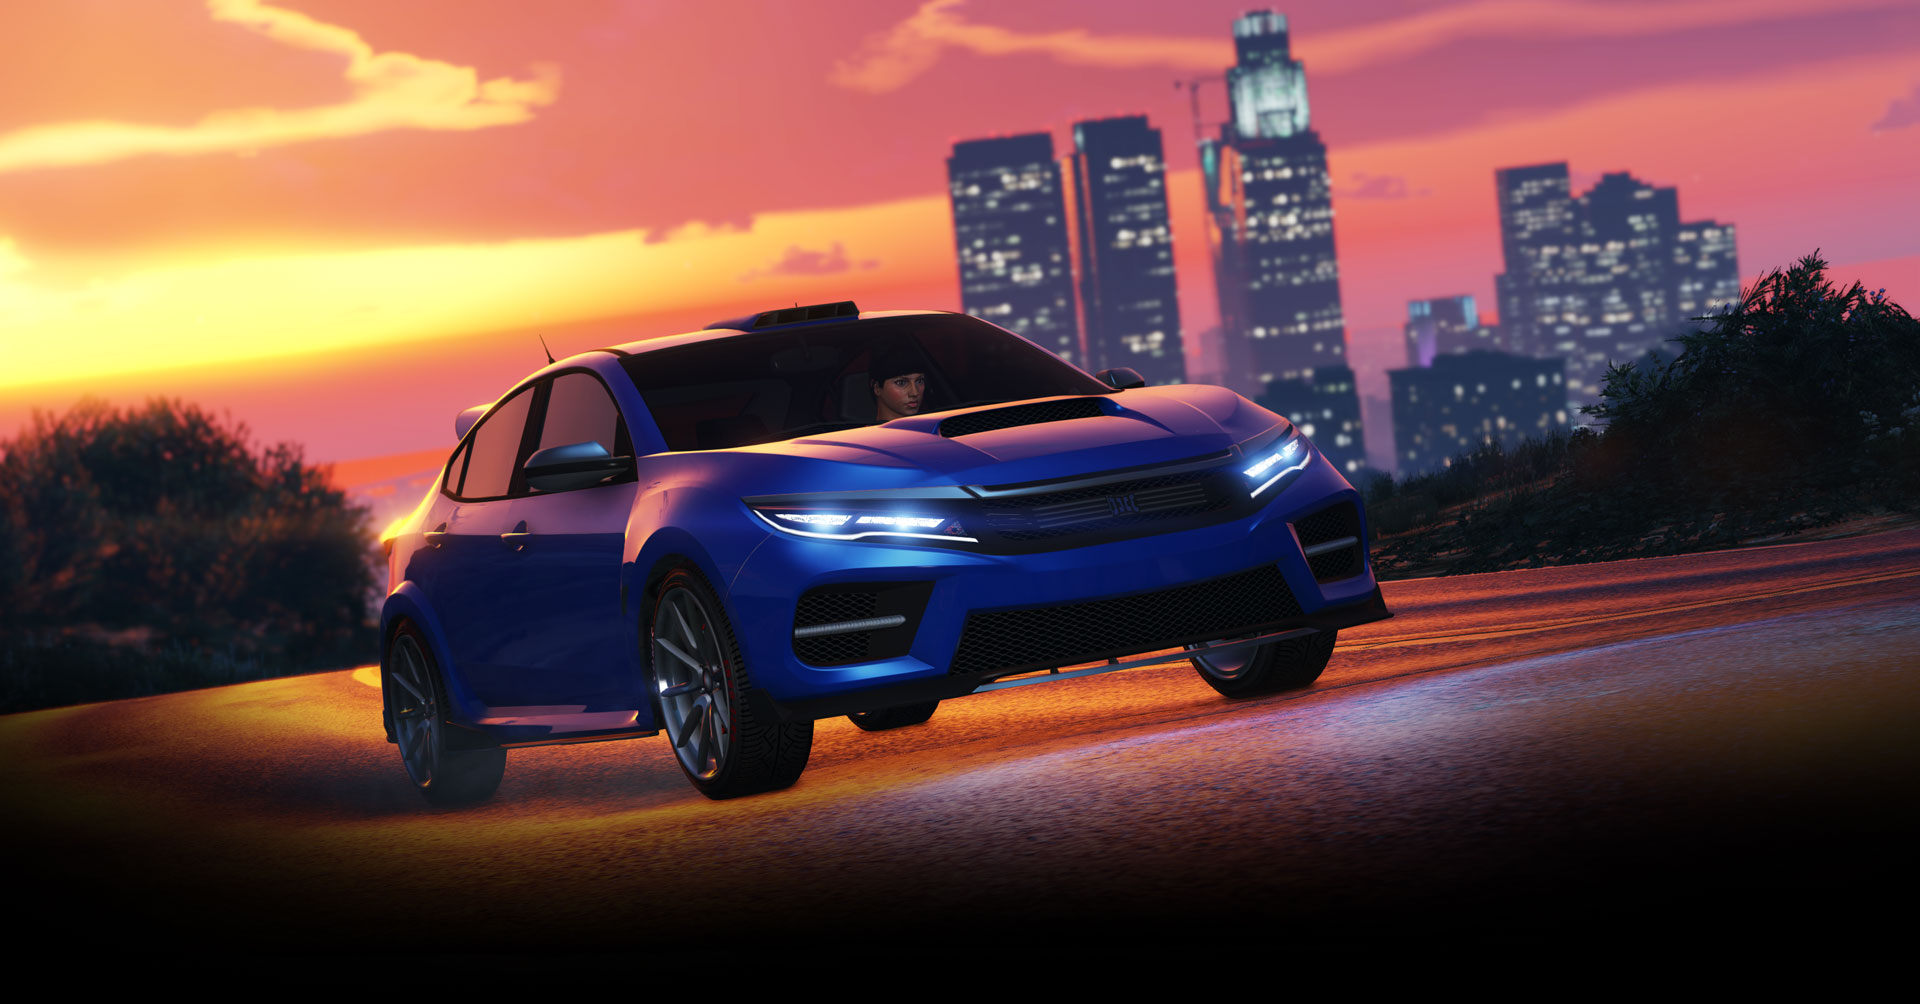 Grand Theft Auto V in arrivo sulle console di nuova generazione nel 2021 